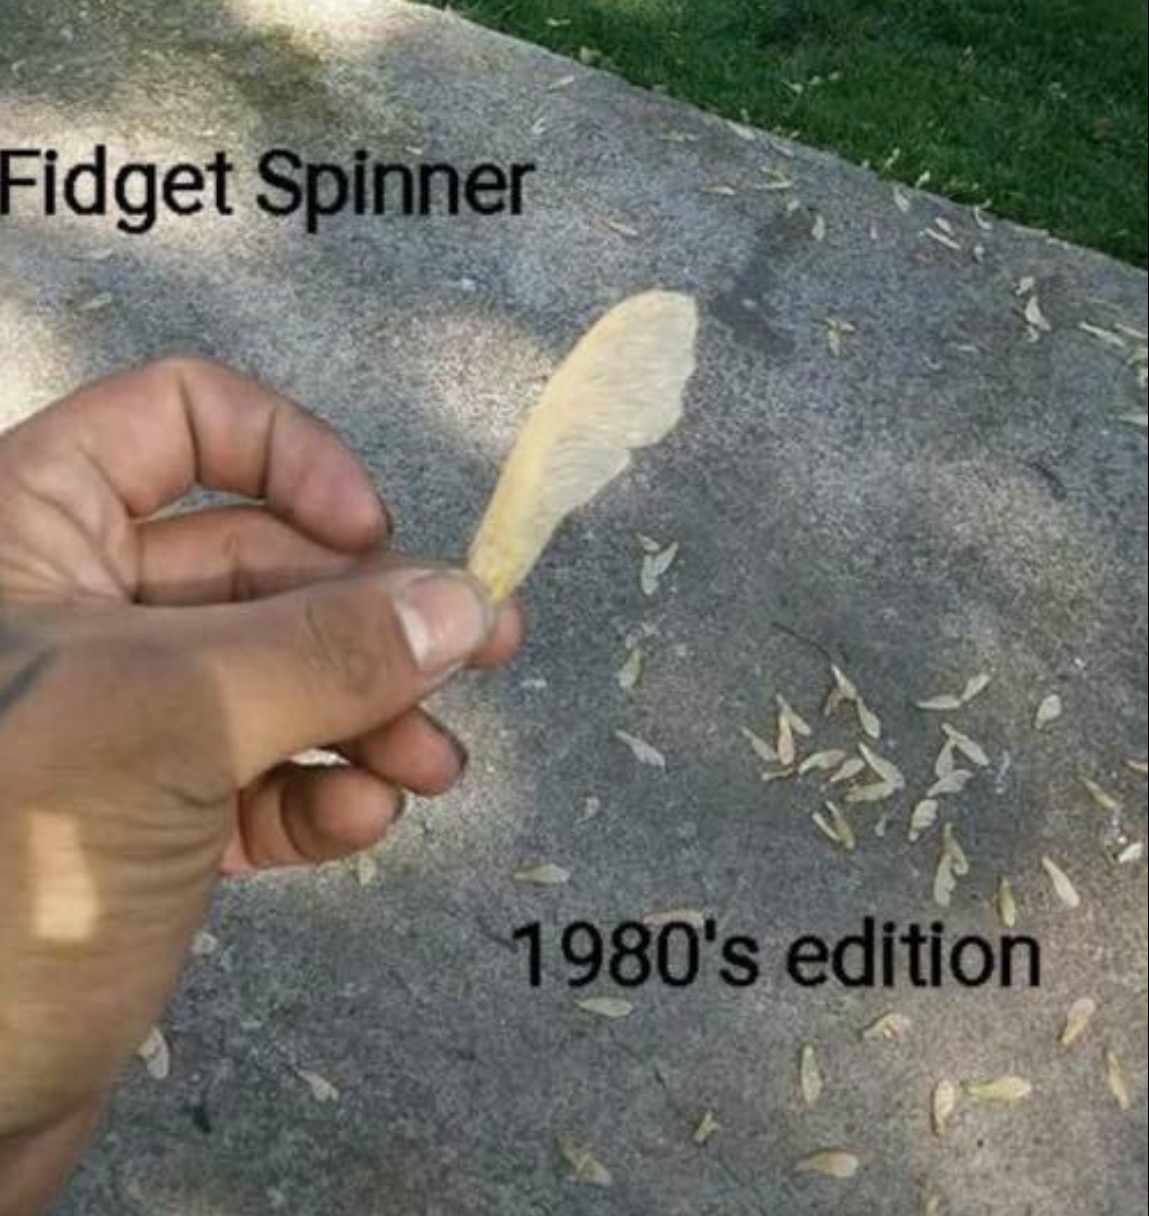 fidget spinner 1980's edition - Fidget Spinner 1980's edition